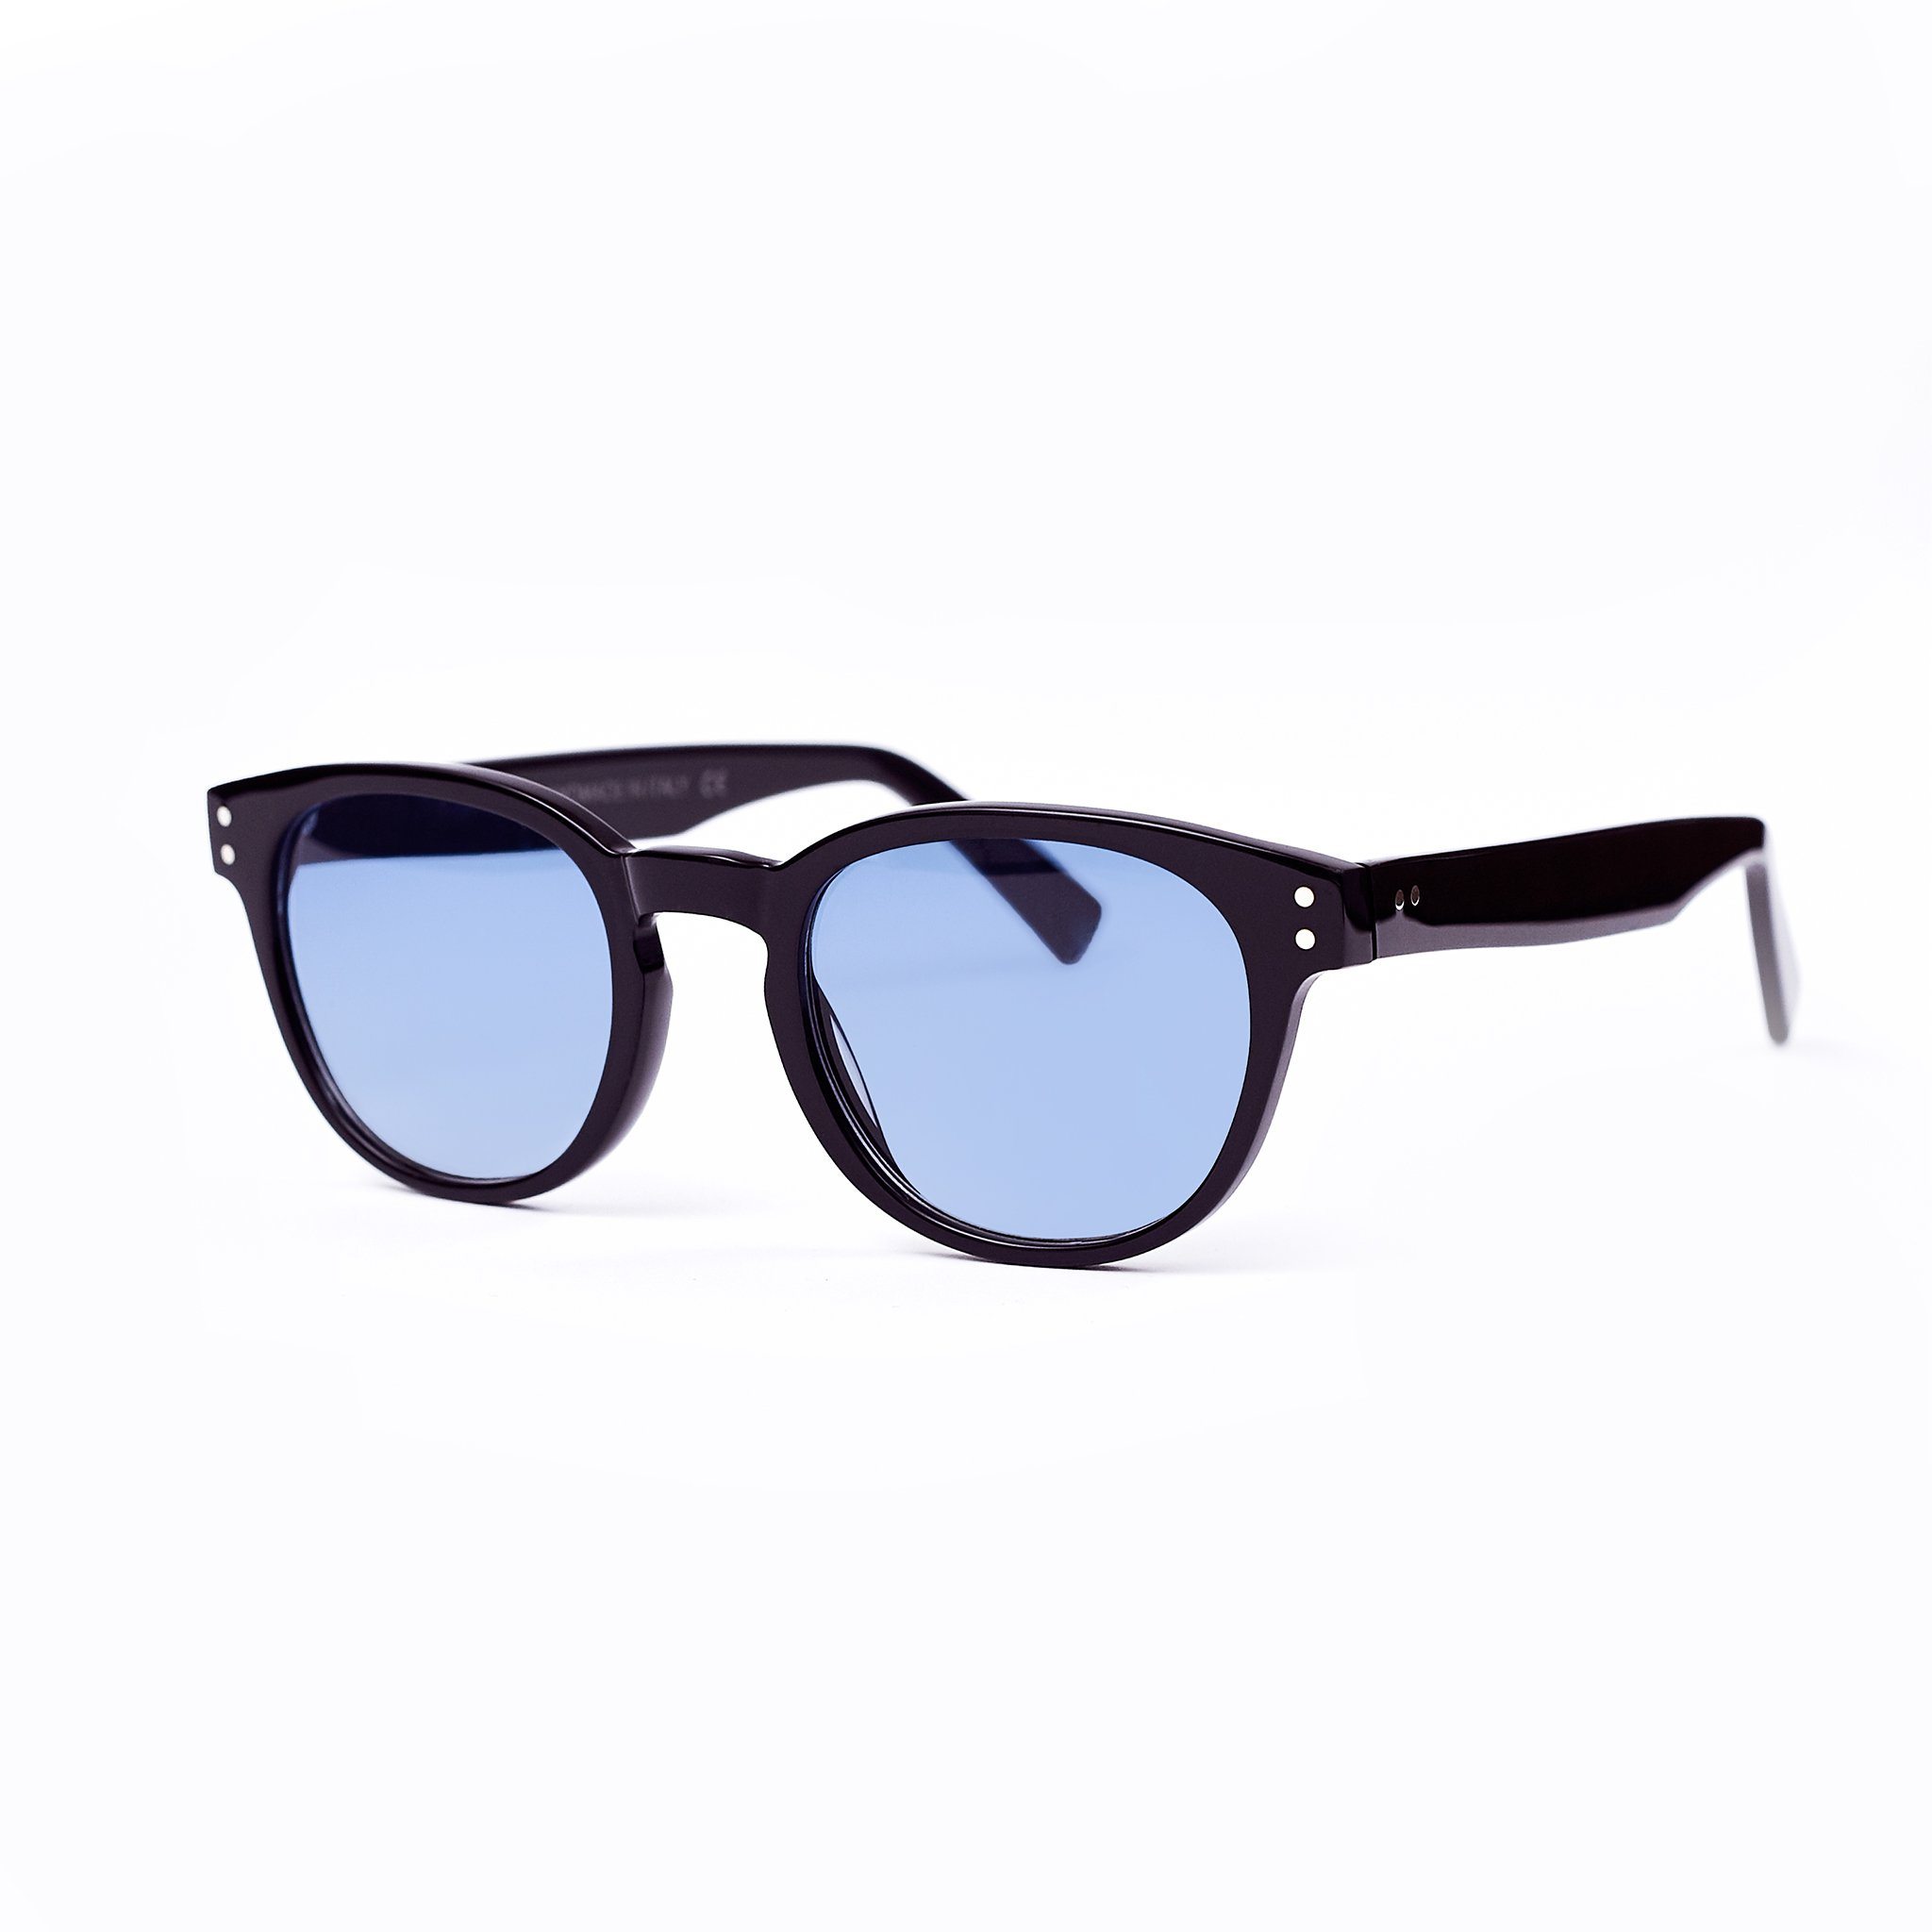 Black sunglasses with light blue lenses handmade in italy